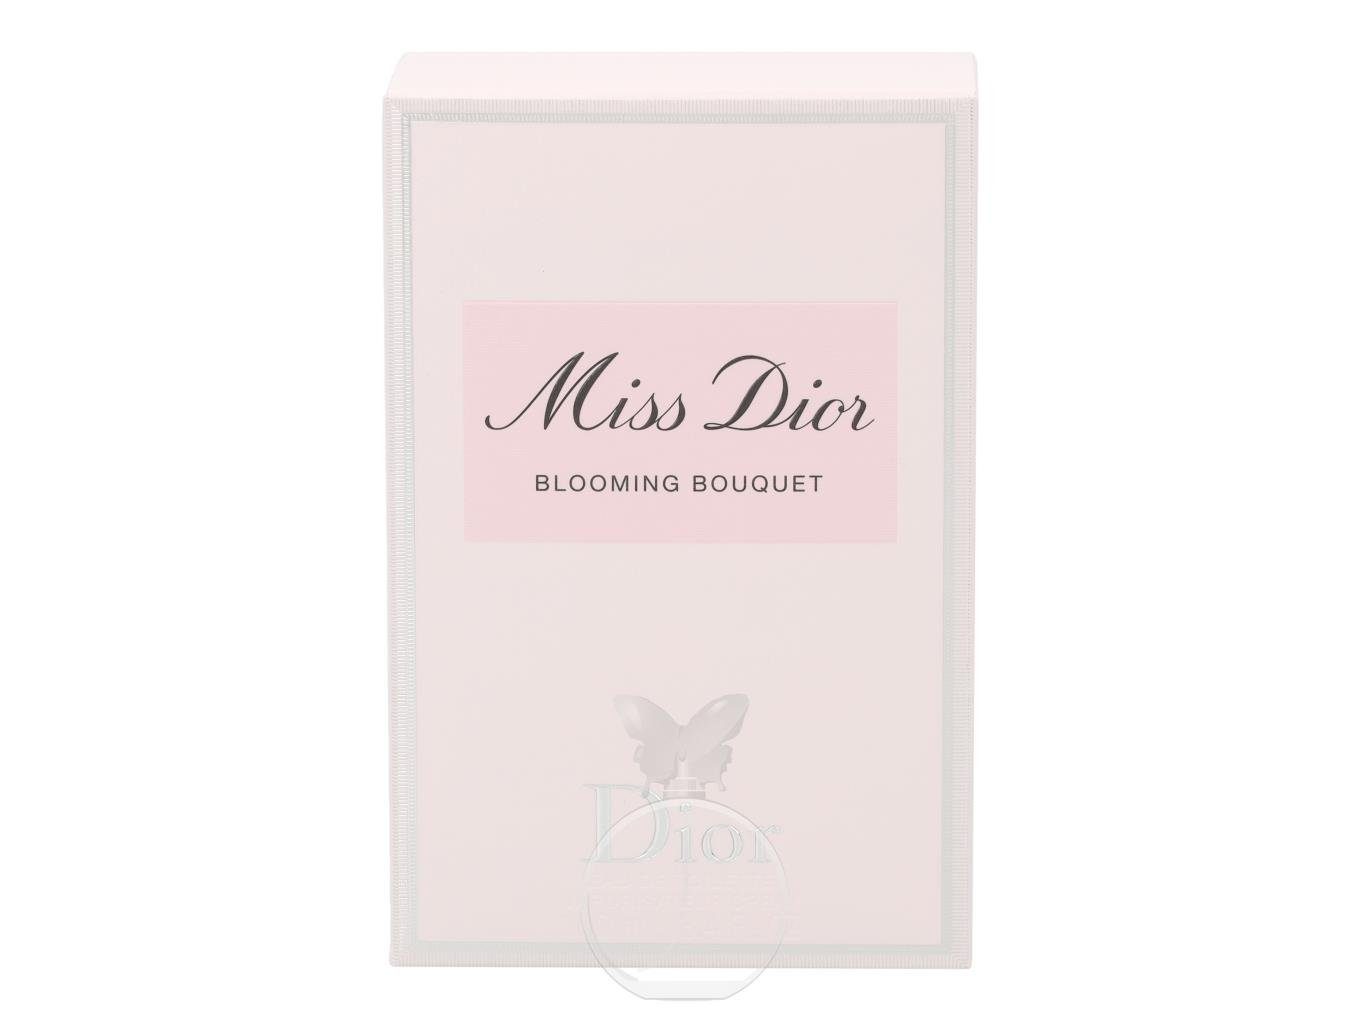 Toilette Bouquet de Eau Blooming Toilette de Dior Dior Miss Eau Dior